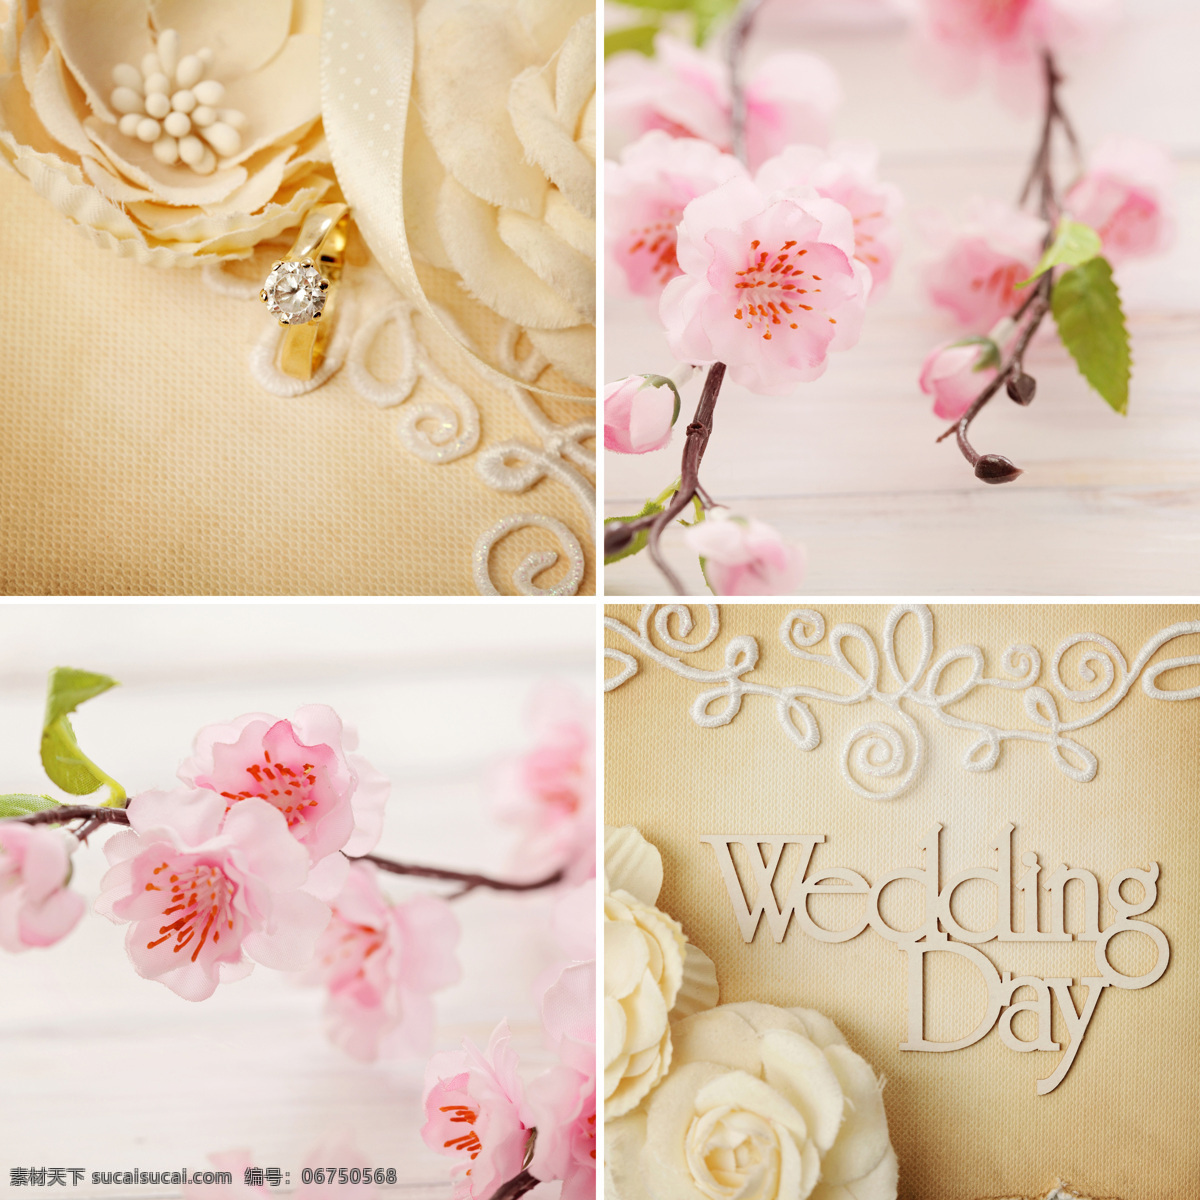 漂亮 婚礼用品 粉色花朵 花卉 钻石戒指 婚礼图片 生活百科